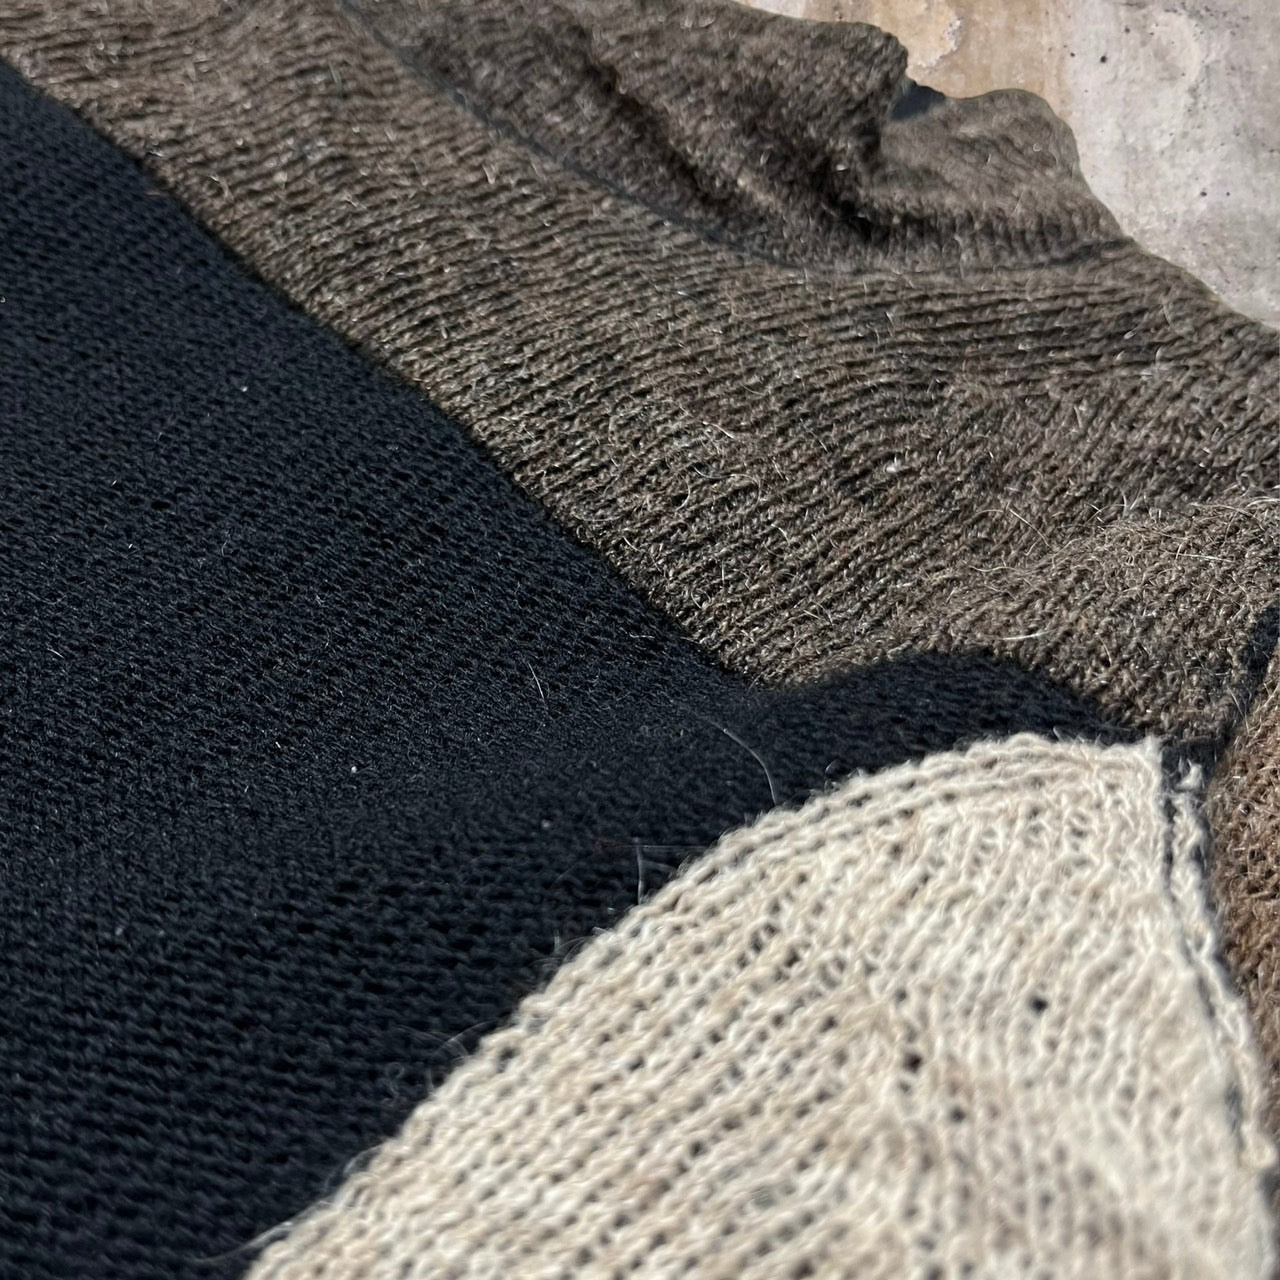 COMME des GARCONS(コムデギャルソン) 98AW wool mohair mock neck knit pullover/ウールモヘヤモックネックニットプルオーバー/90年代/ヴィンテージ GN-040340 SIZE表記なし(FREE) ブラウン×ブラック×ベージュ AD1998